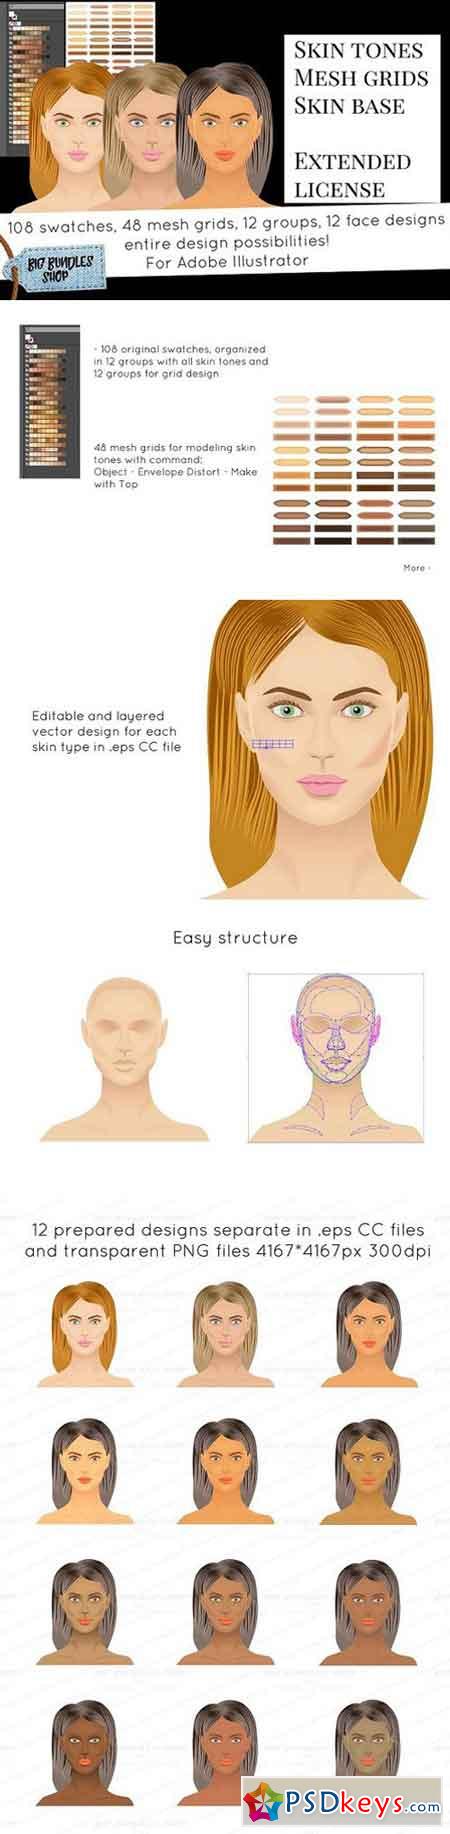 Skin tones - Adobe illustrator 1259588